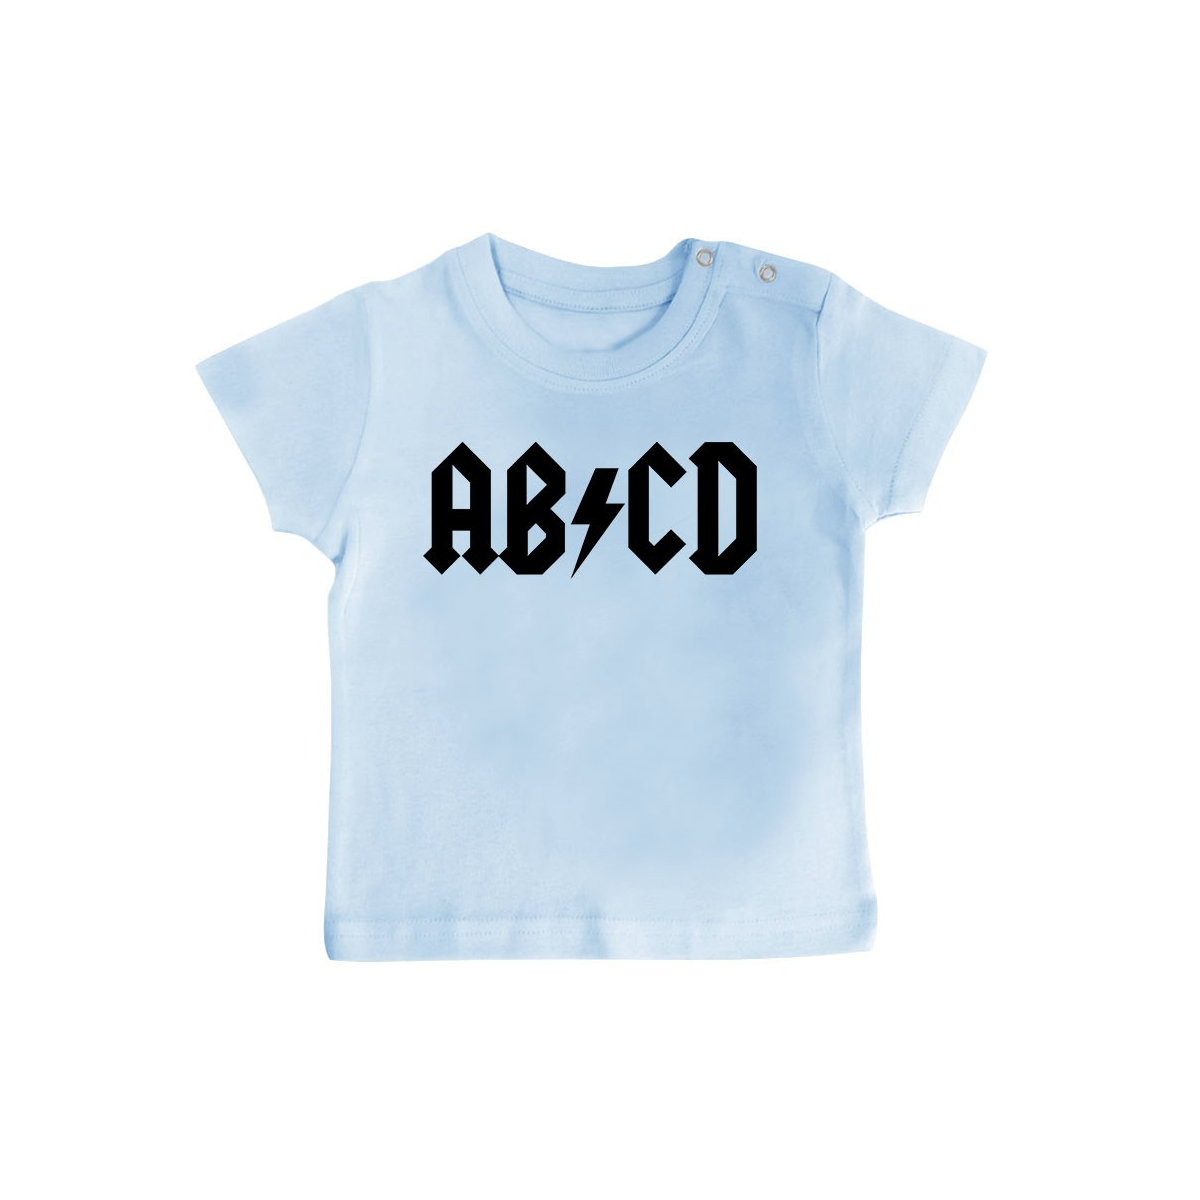 T-Shirt bébé AB*CD